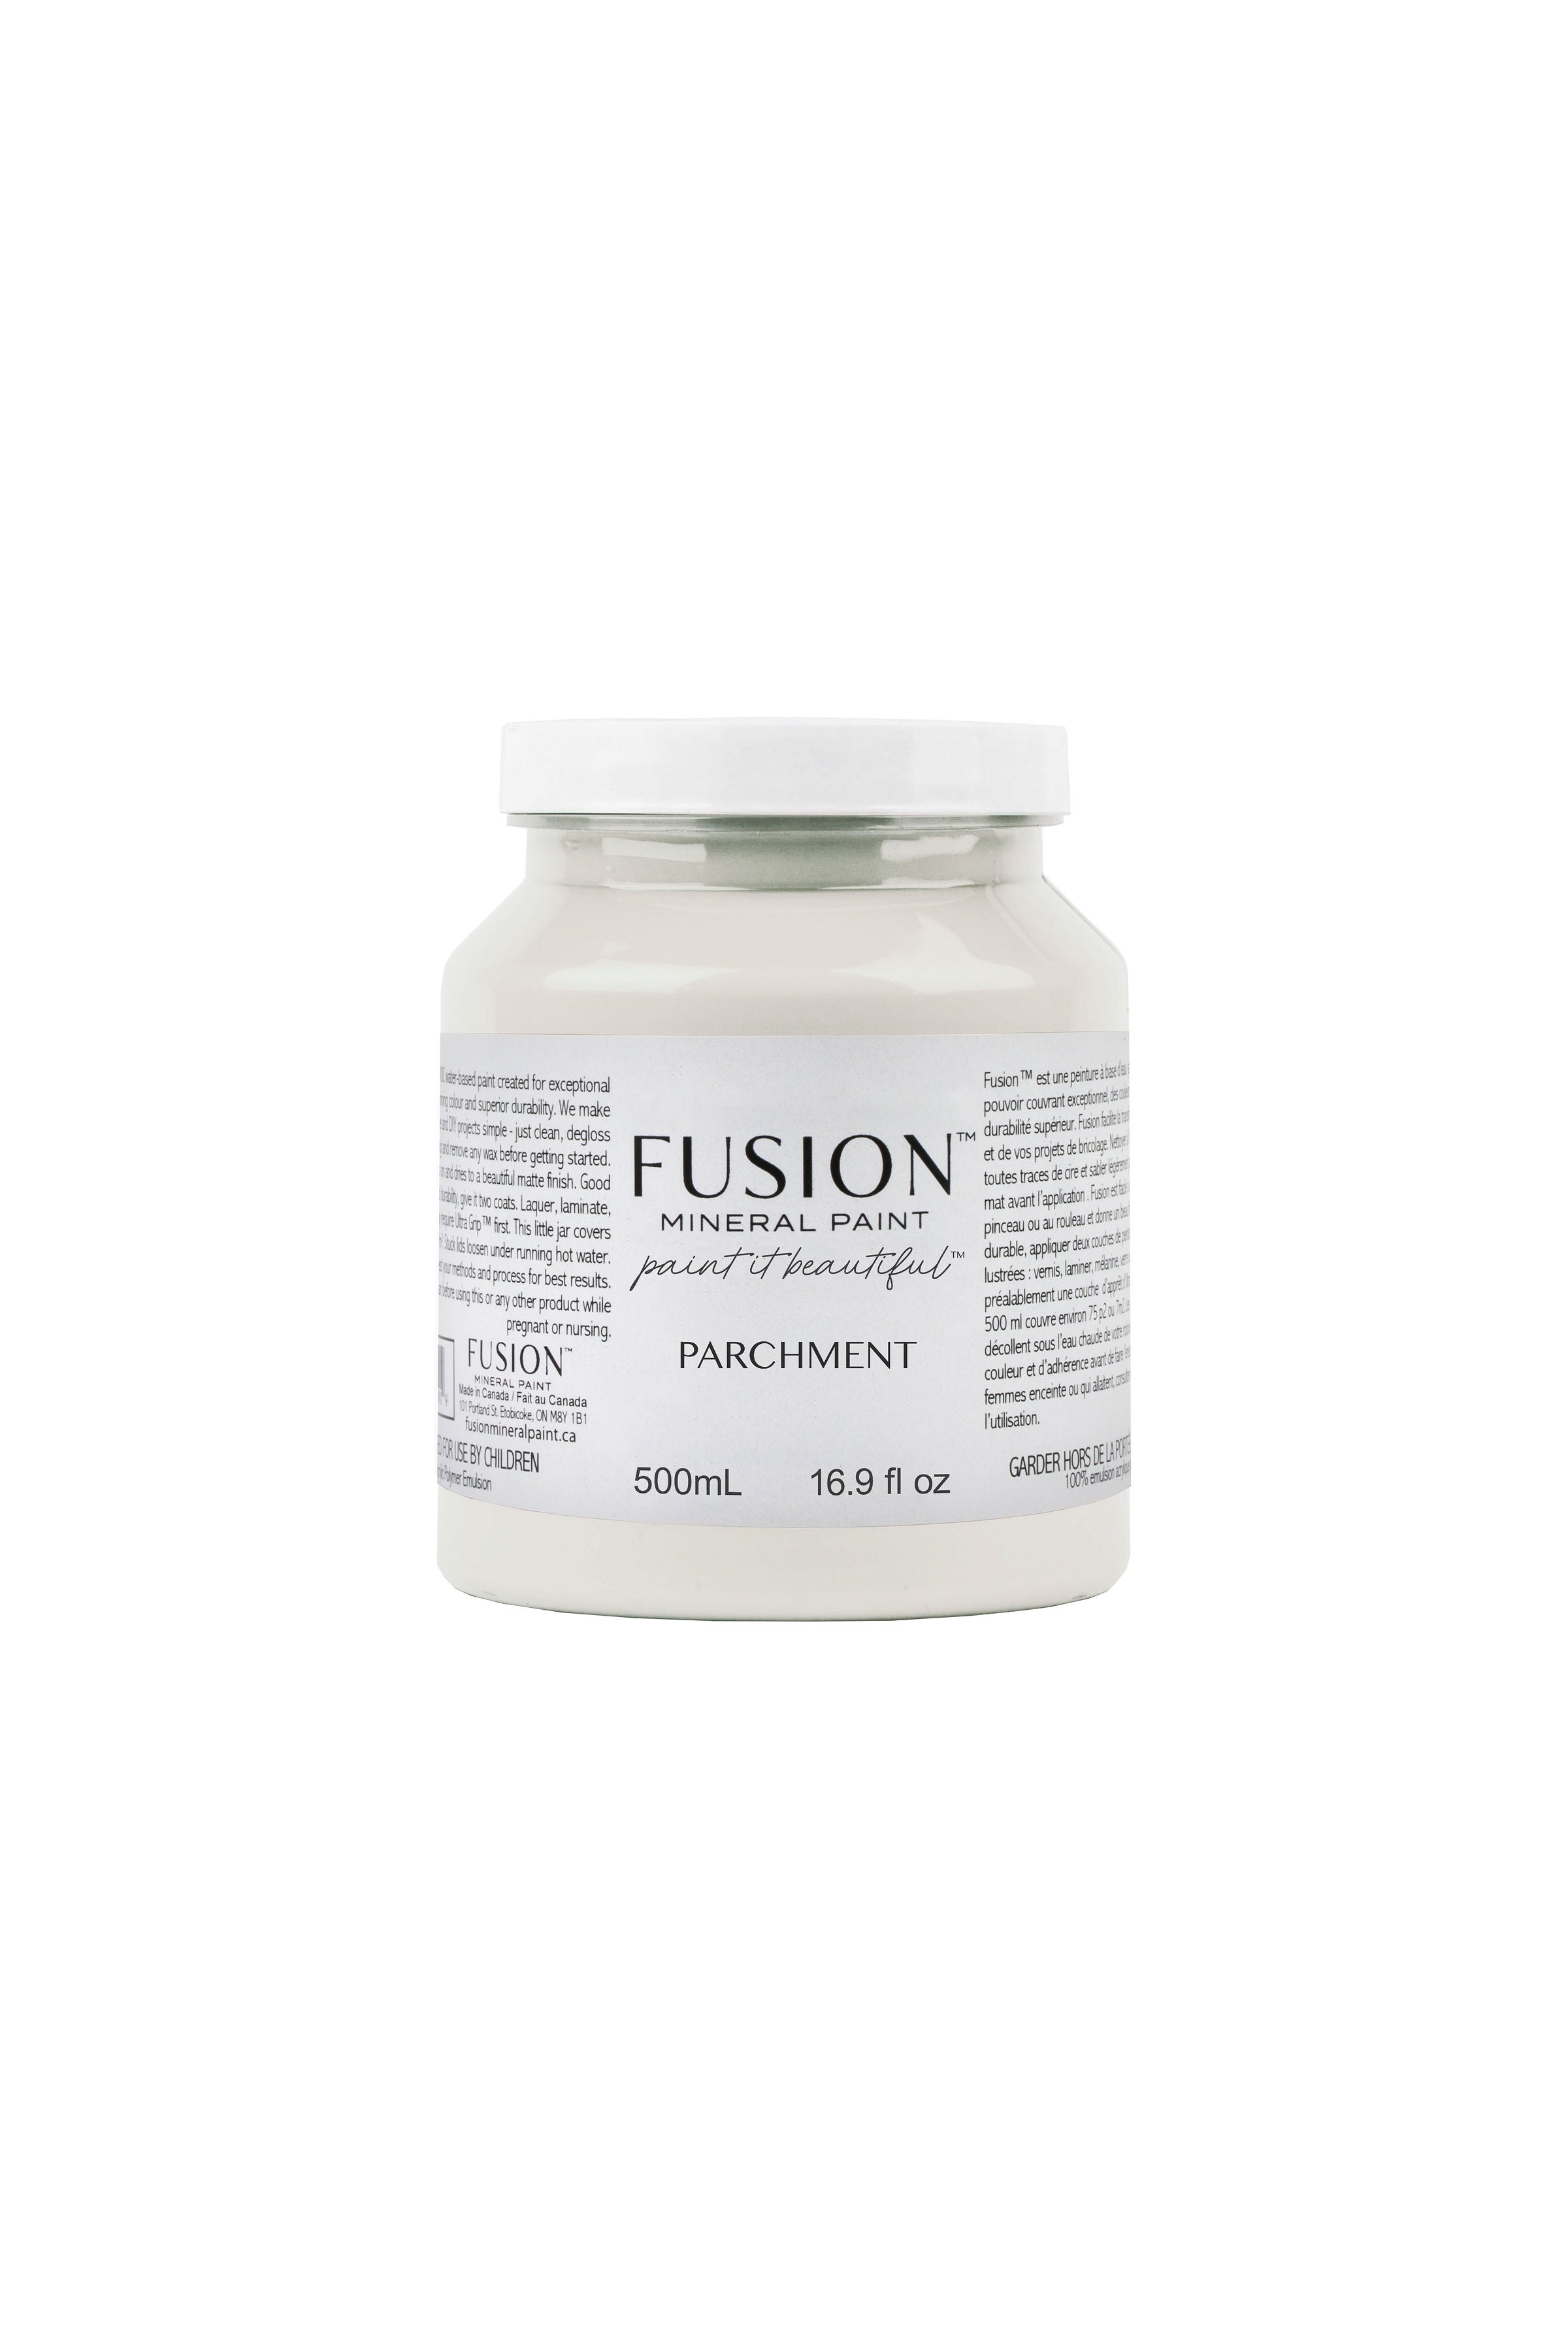 Fusion mineral paint parchment 500ml jar